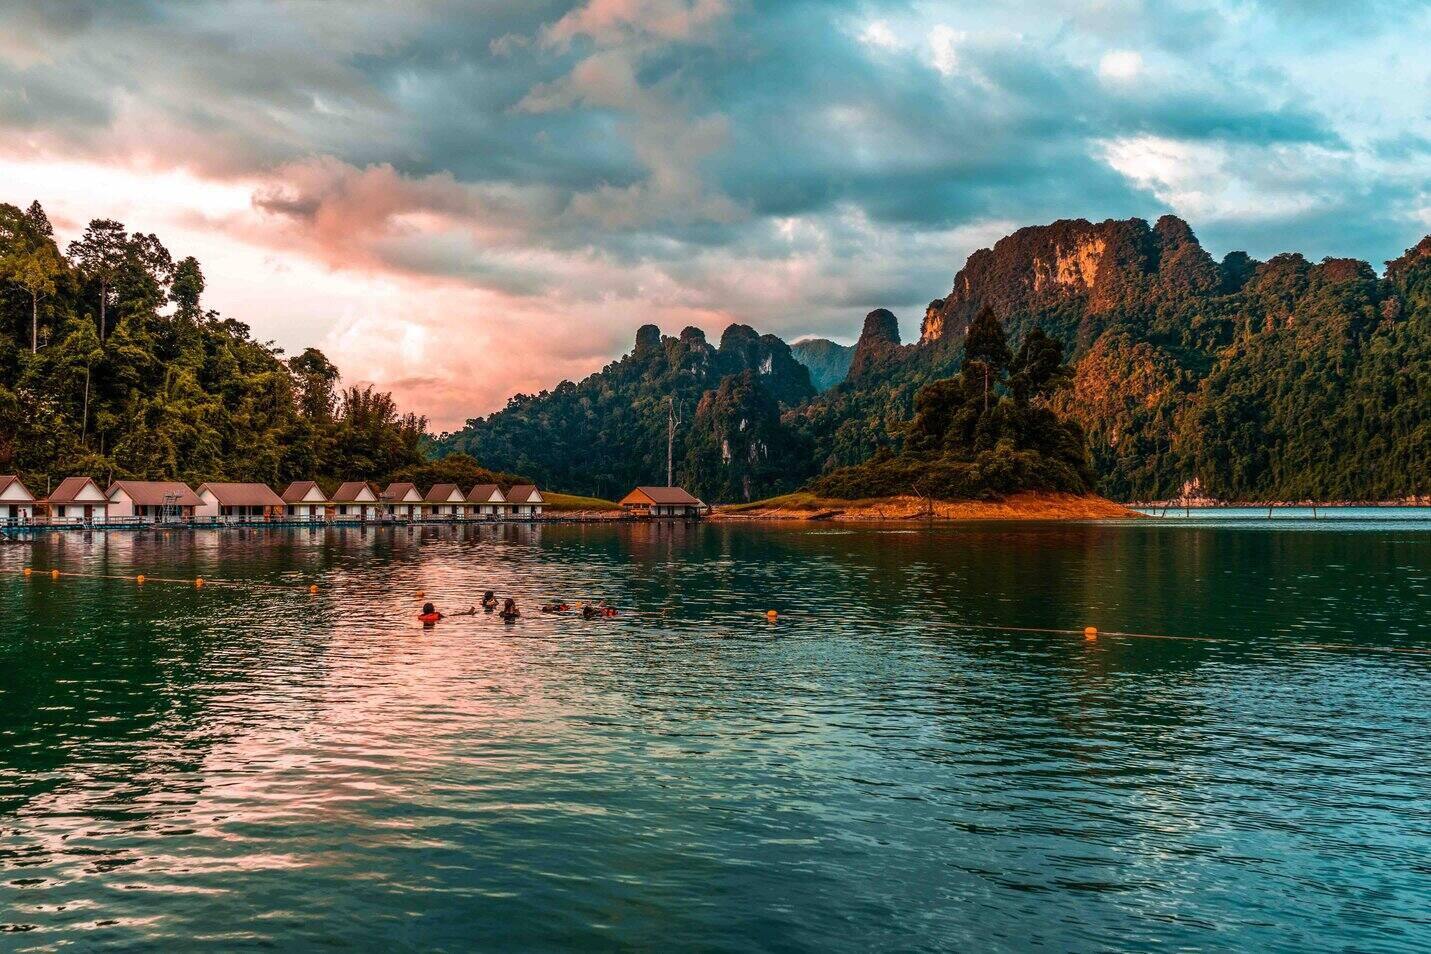 Khao Sok Lake